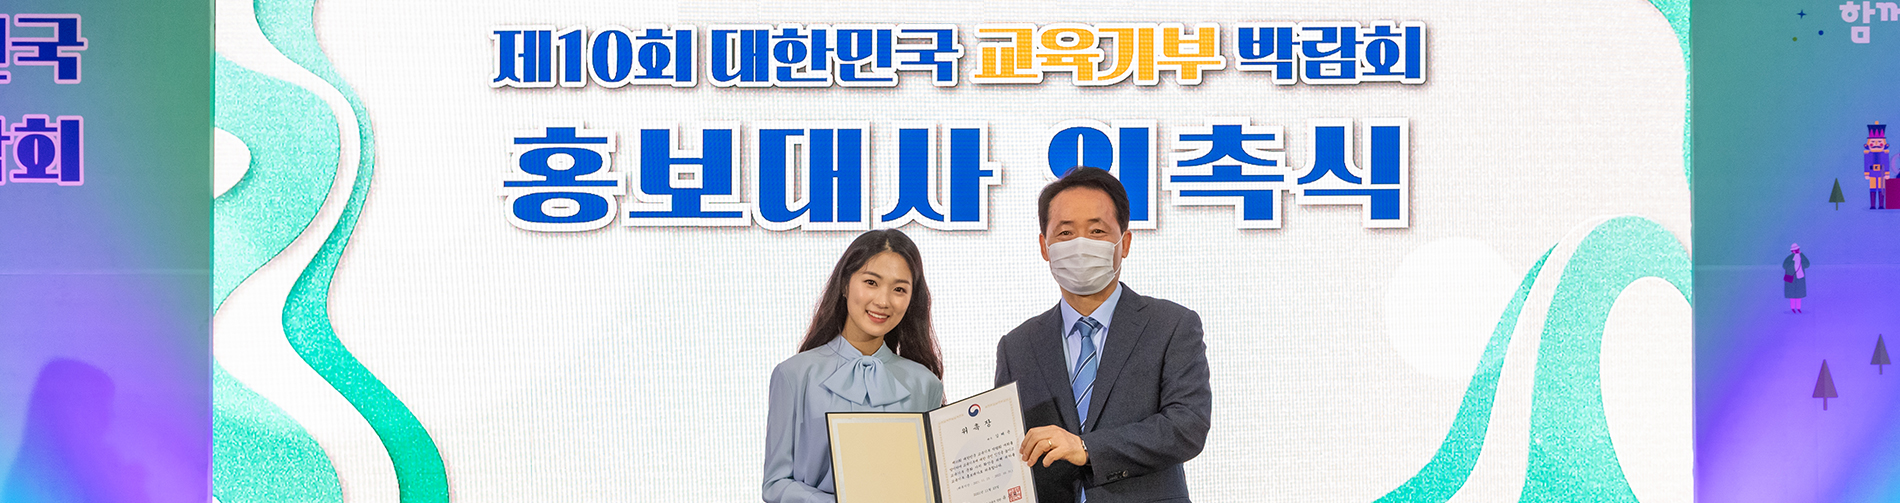 제10회 대한민국 교육기부 박람회 홍보대사 위촉식